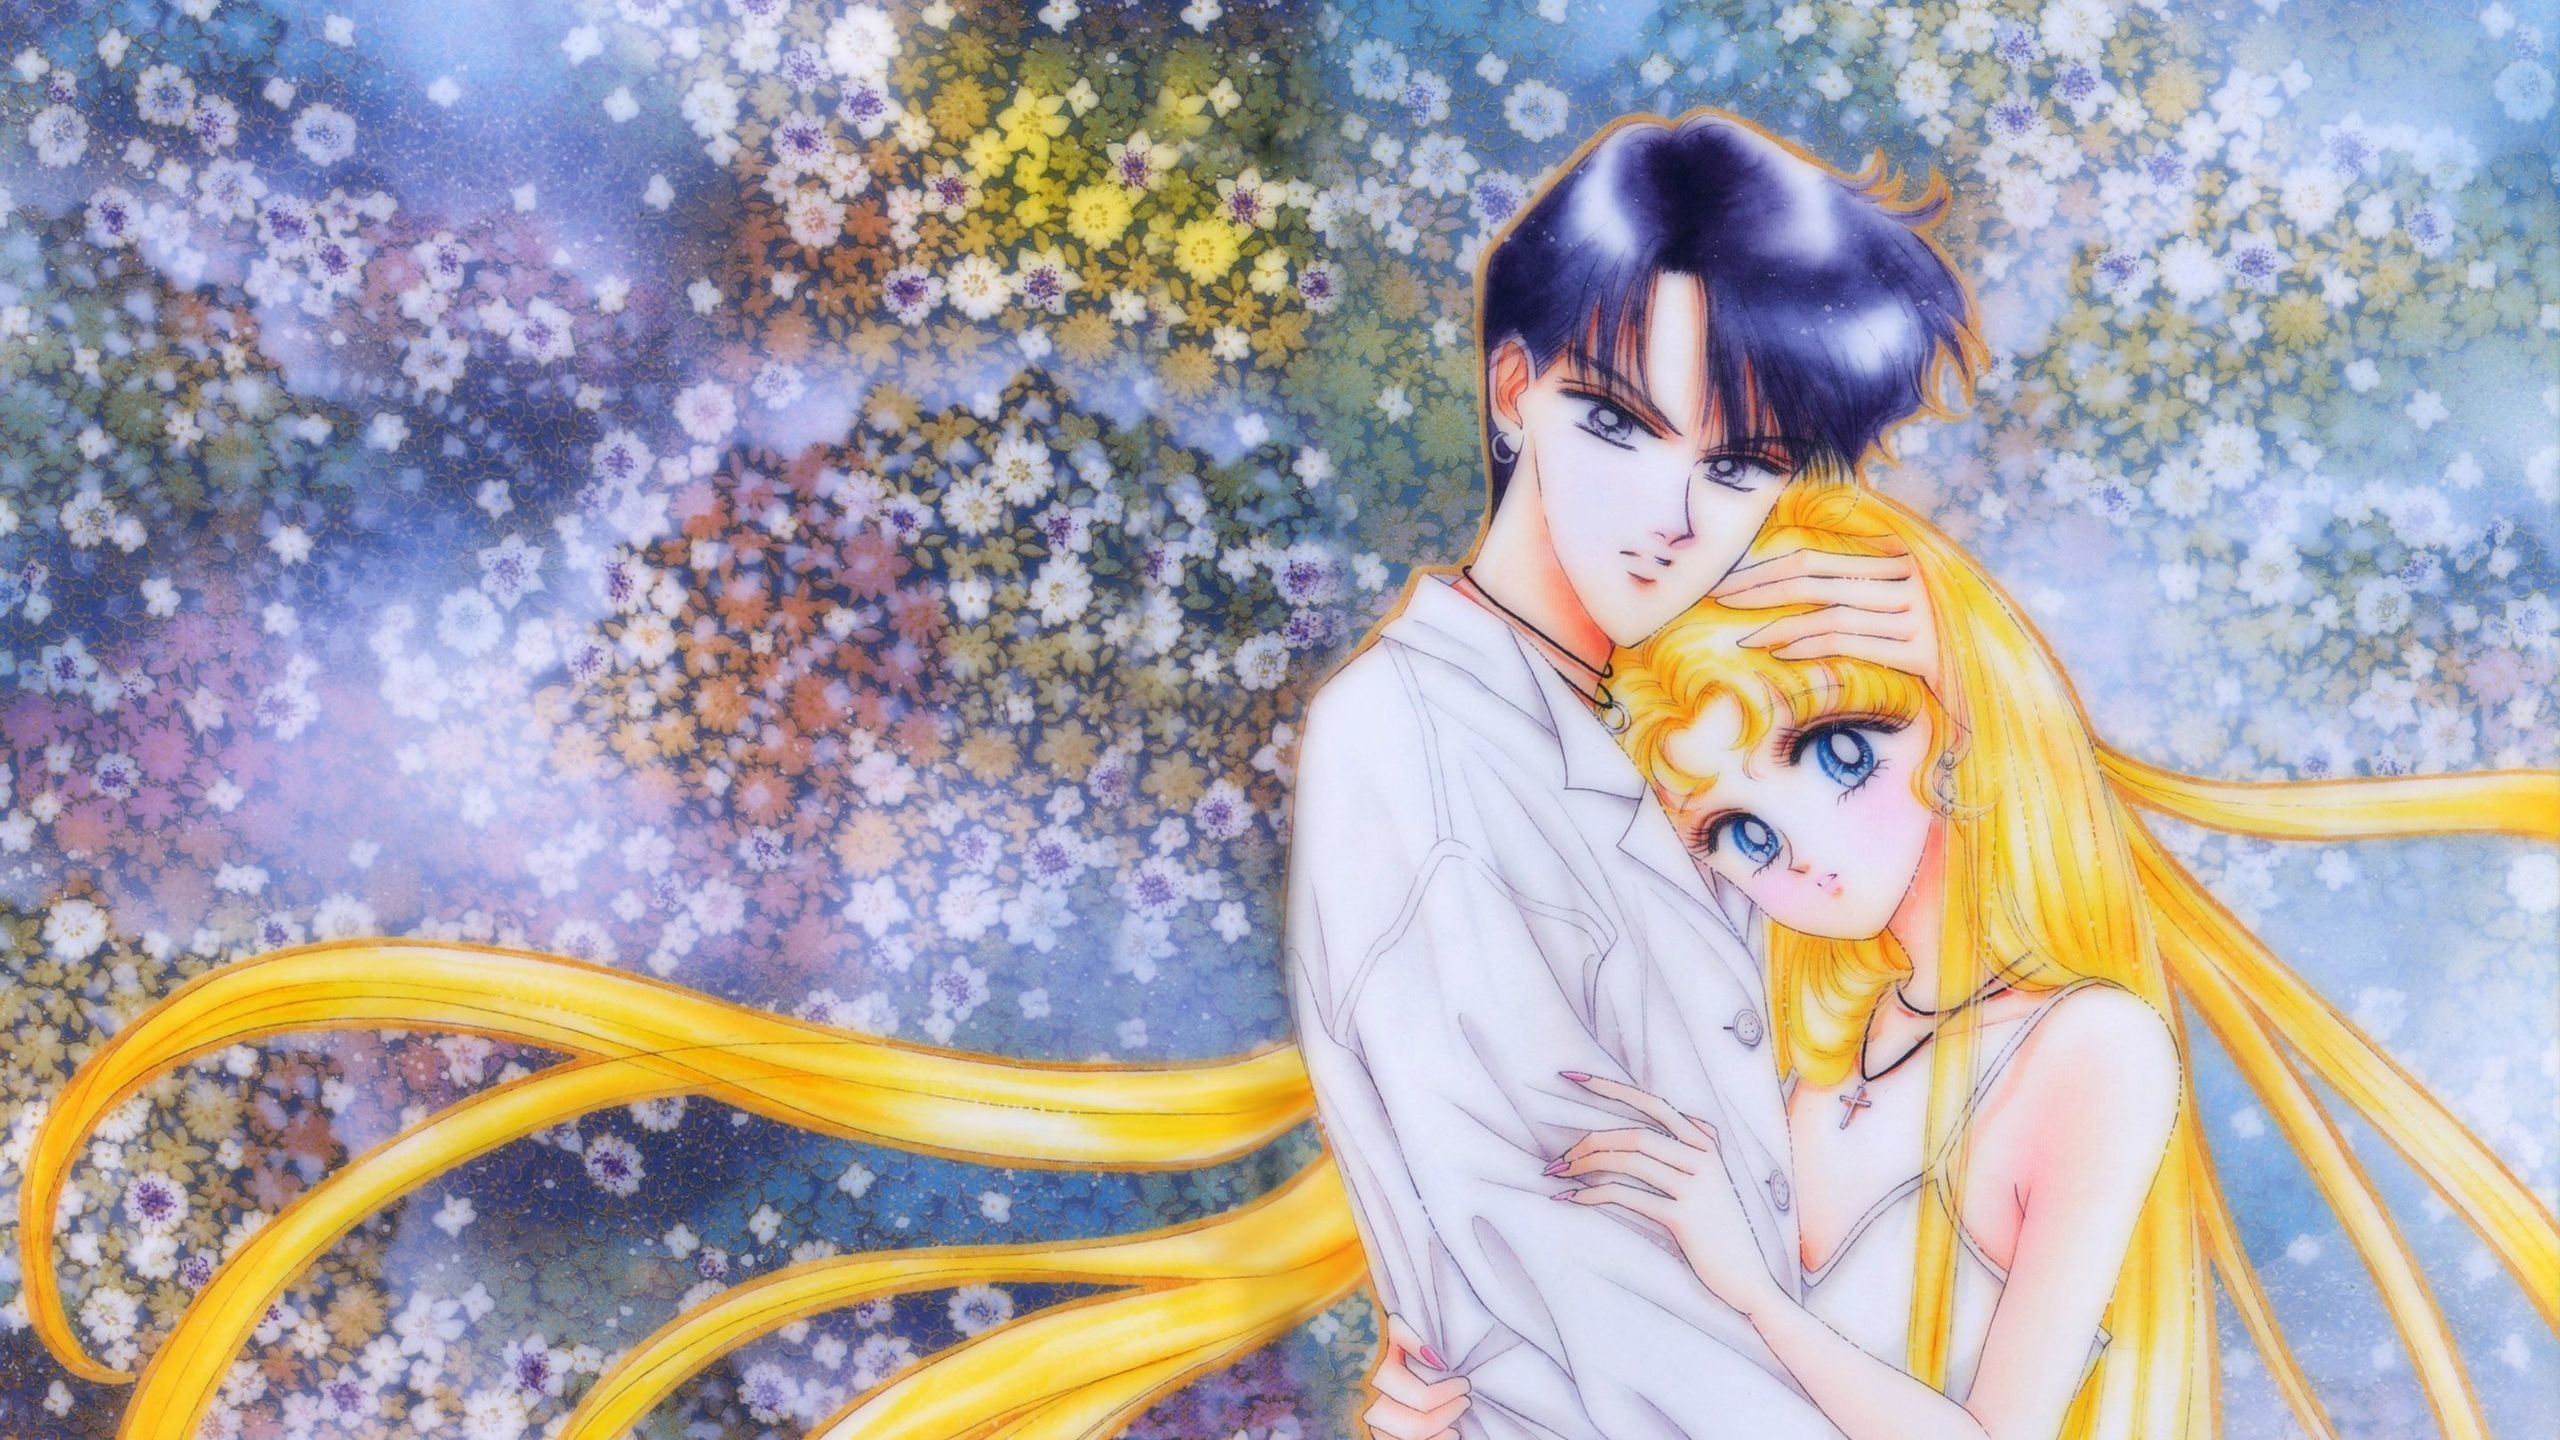 2560x1440 Sailor Moon HD Wallpaper 1920x1080 Sailor Moon HD Wallpaper 1920x1200 Sailor  Moon HD Wallpaper  Sailor ...